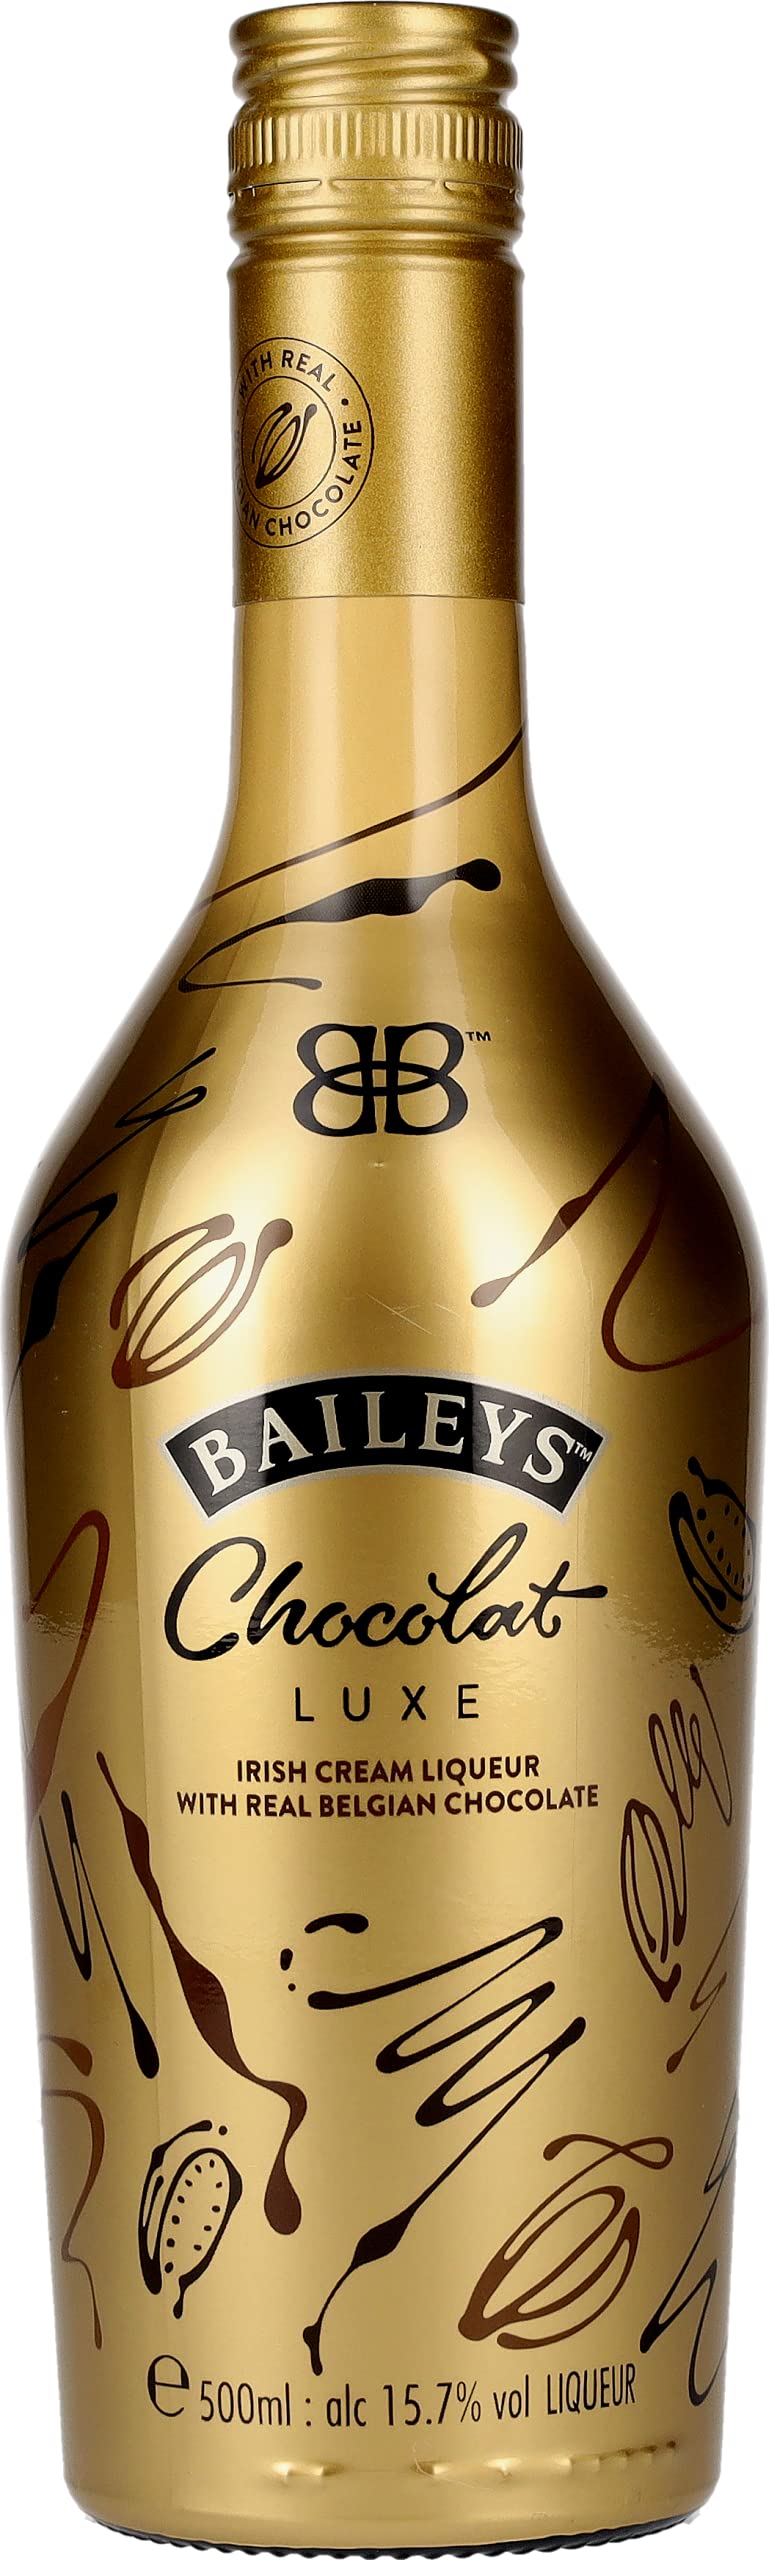 chocolat baileys